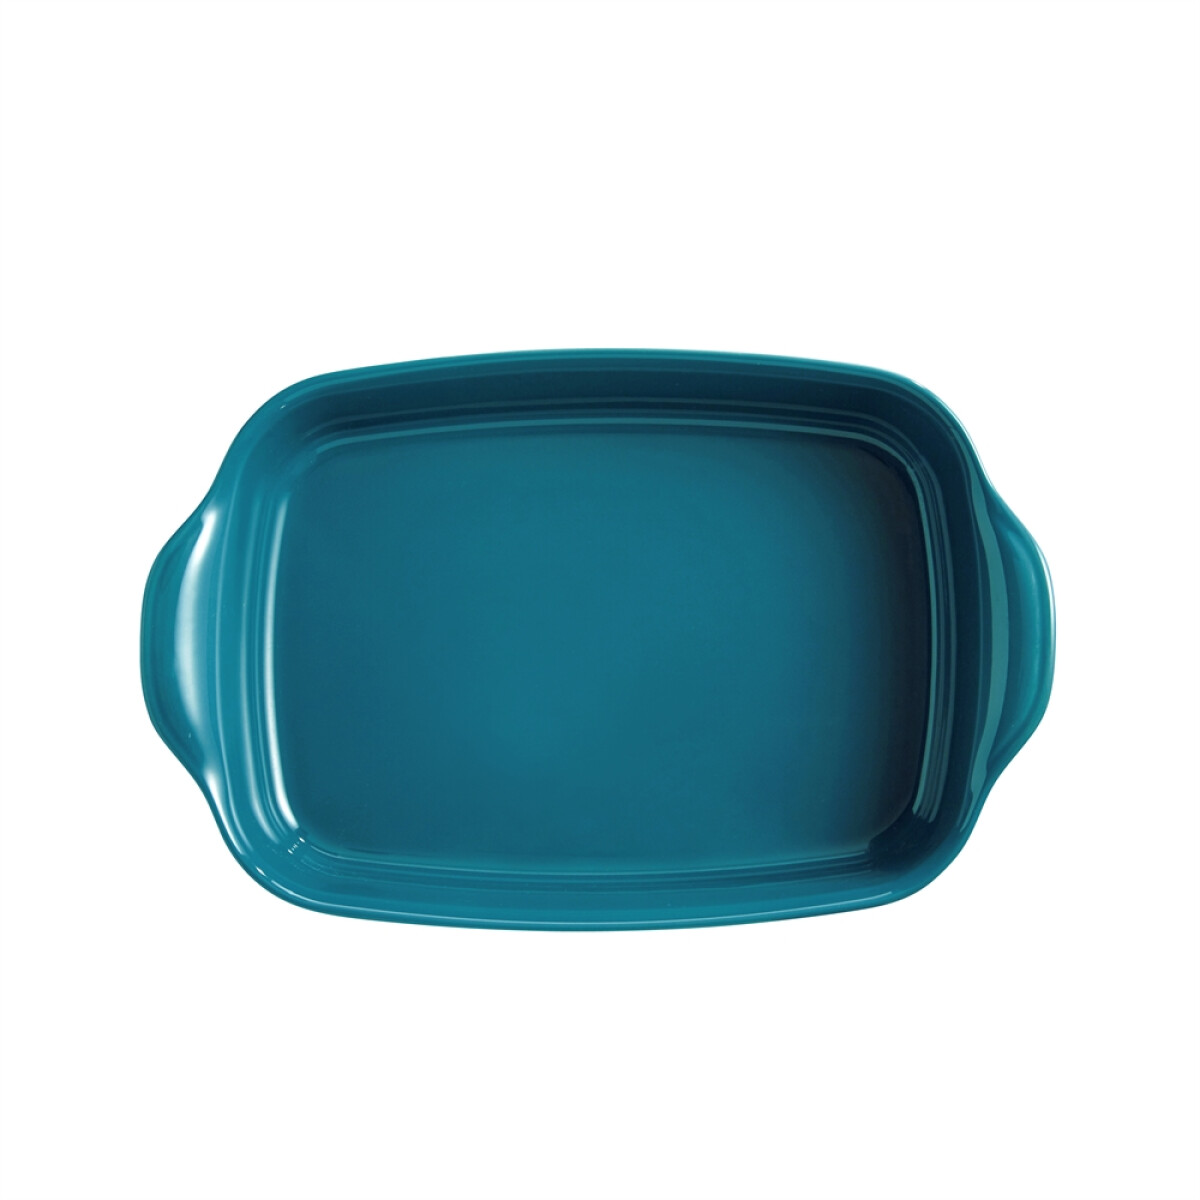 Керамична тава EMILE HENRY RECTANGULAR OVEN DISH - 36,5 х 23,5 см, цвят син